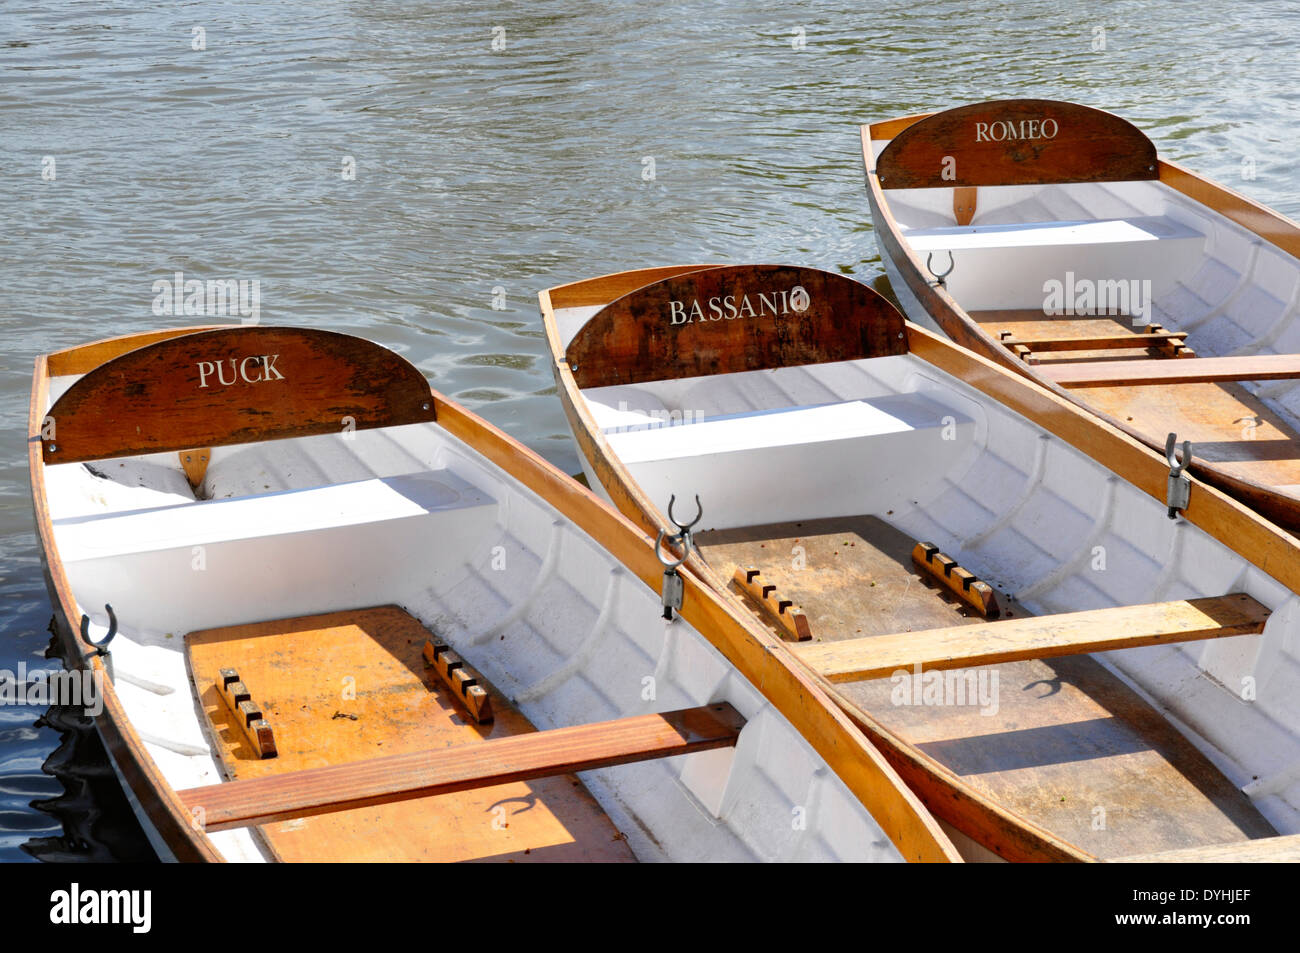 Stratford on Avon - durch den Fluss - Ruderboote zu mieten - benannt nach einer Shakespeare-Figur - strahlendem Sonnenschein jedes Boot Stockfoto